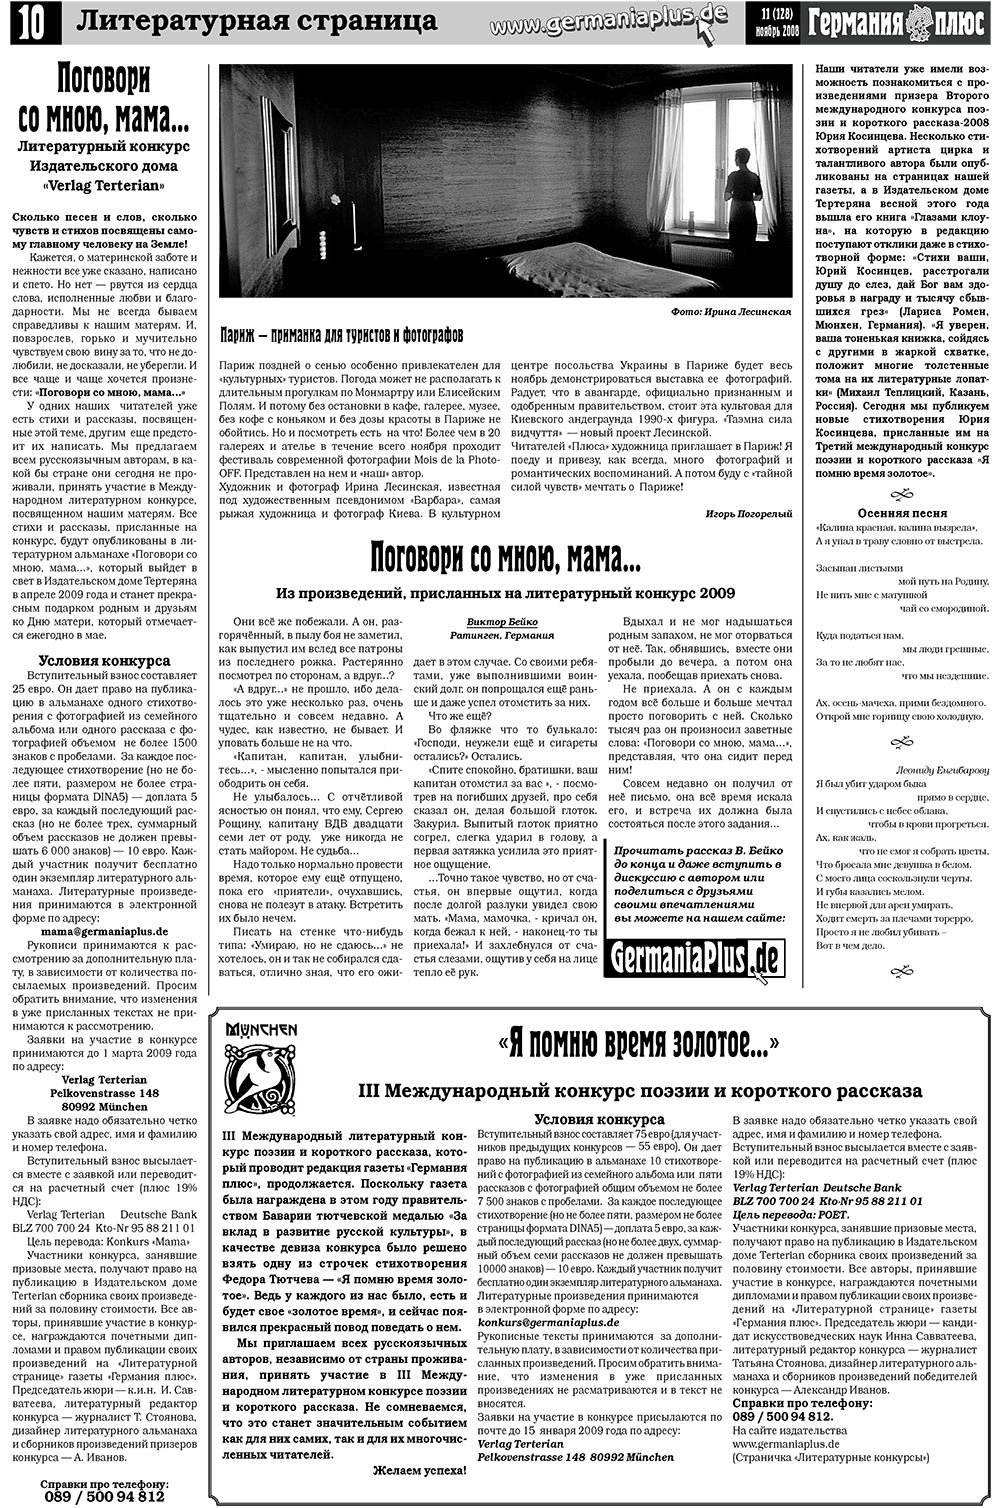 Германия плюс, газета. 2008 №11 стр.12